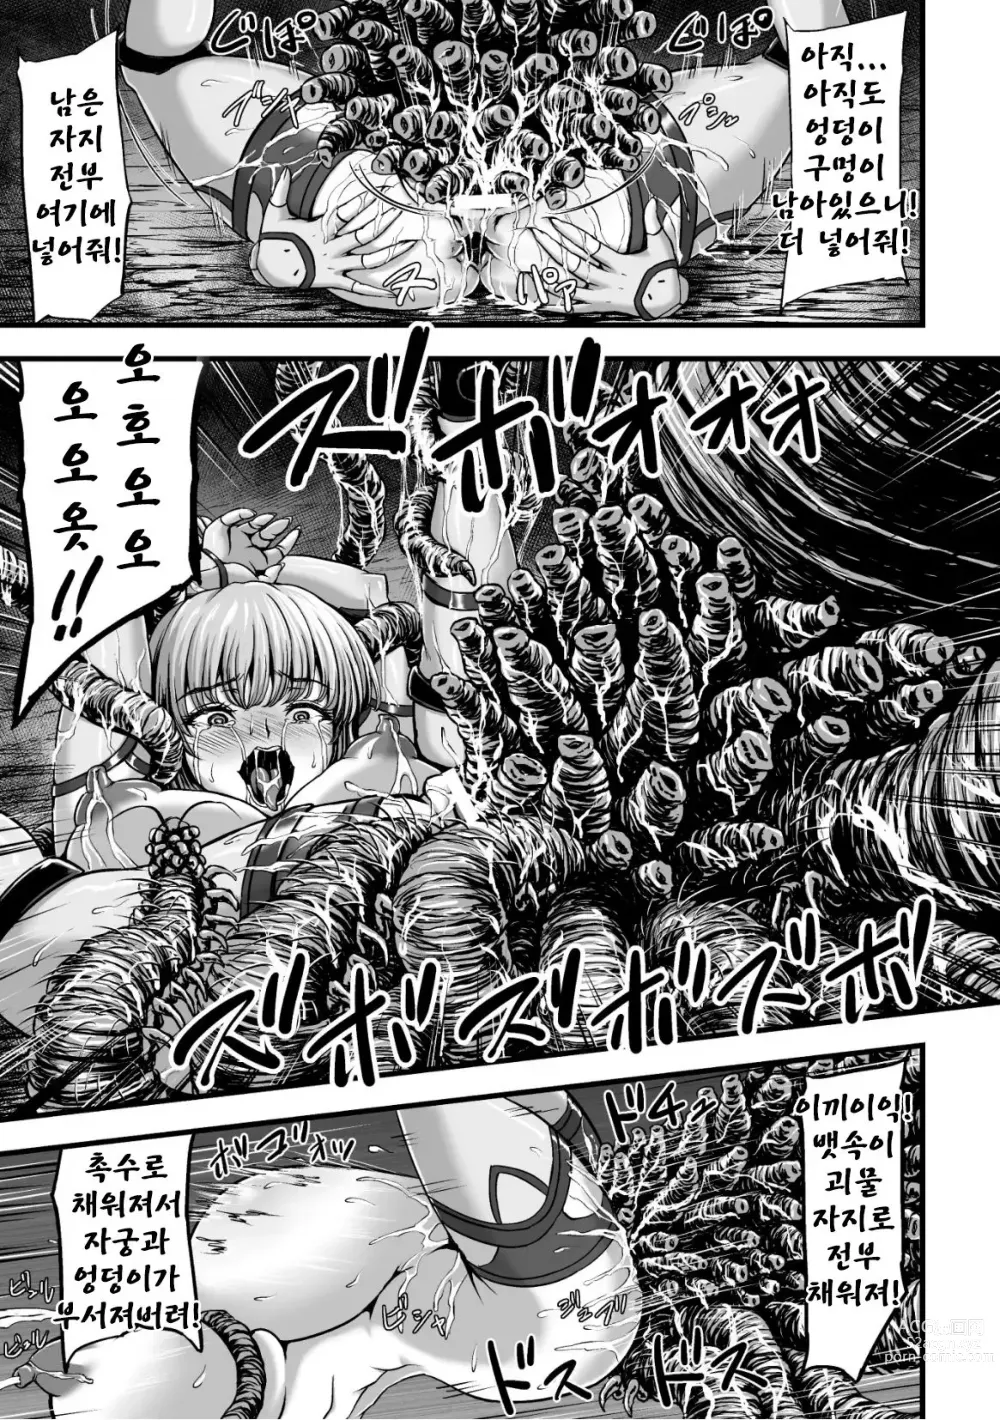 Page 32 of manga Kangoku Tentacle Battleship Episode 2